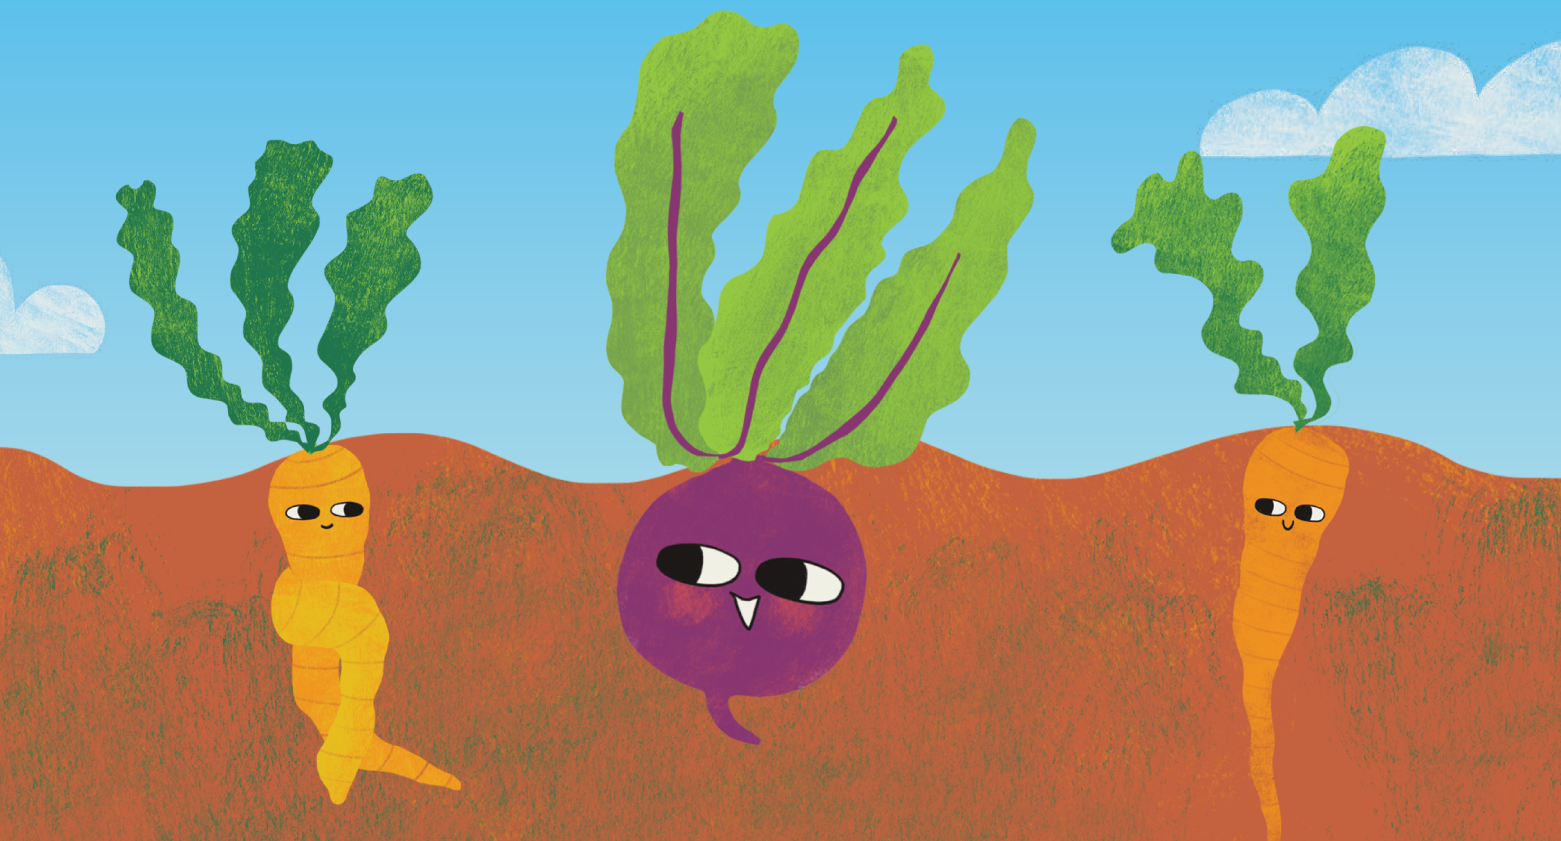 3 illustrated root veggies sit underground